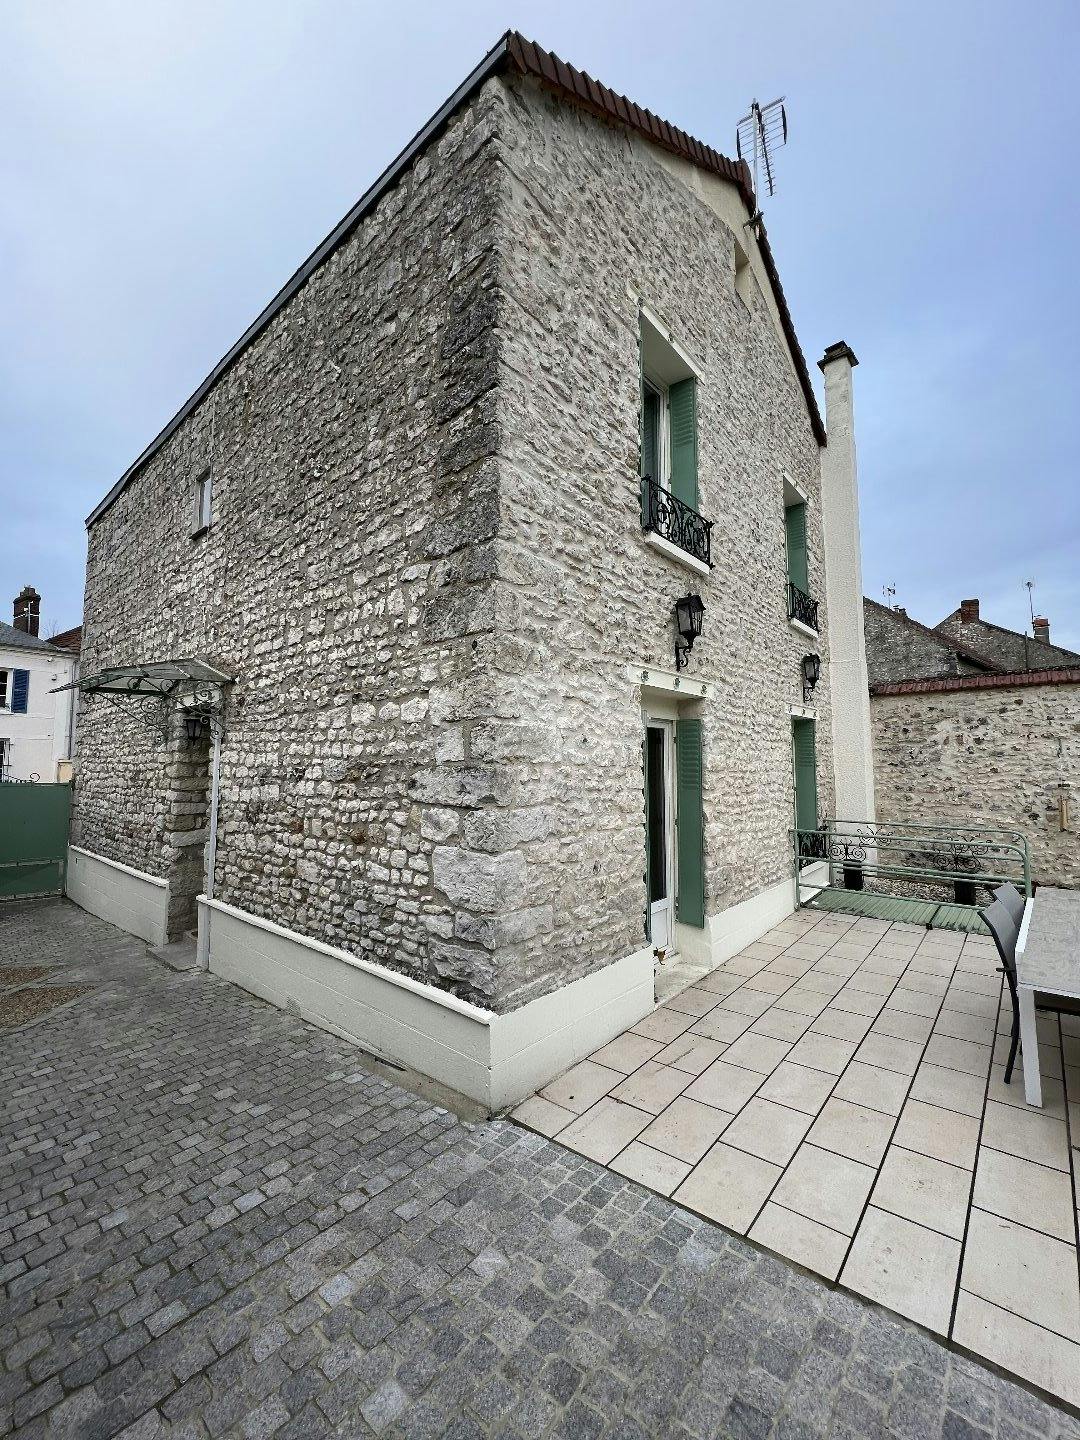 A vendre , Bennecourt (  78270 ) , maison de 106 m2 habitables ,  6 pièces , 3 chambres , terrain 594 m2